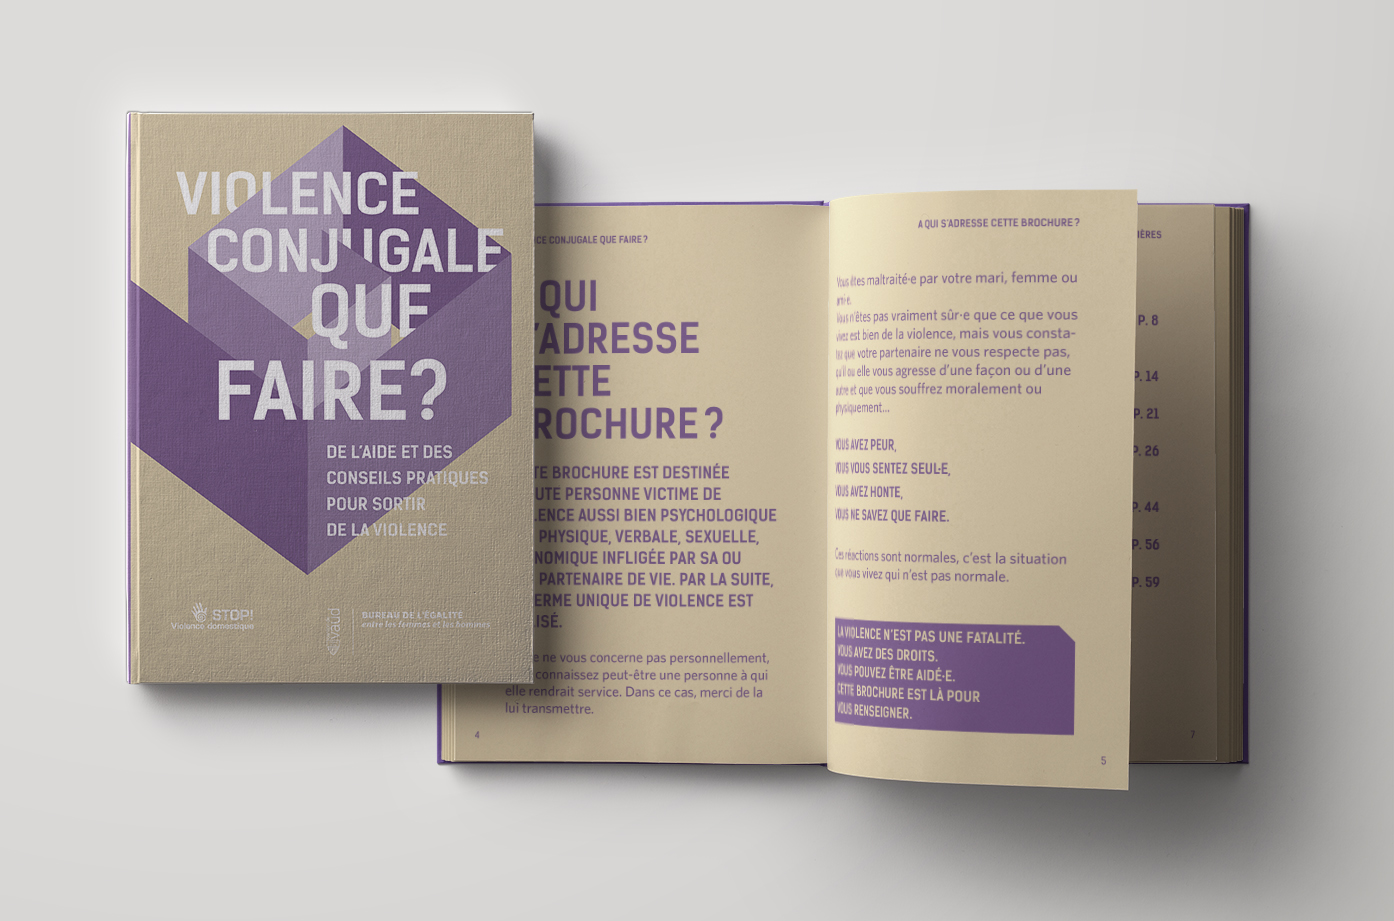 bureau-egalite-vaud-brochure-violence-que-faire-creation-sophie-jaton-atelier-de-graphisme-geneve